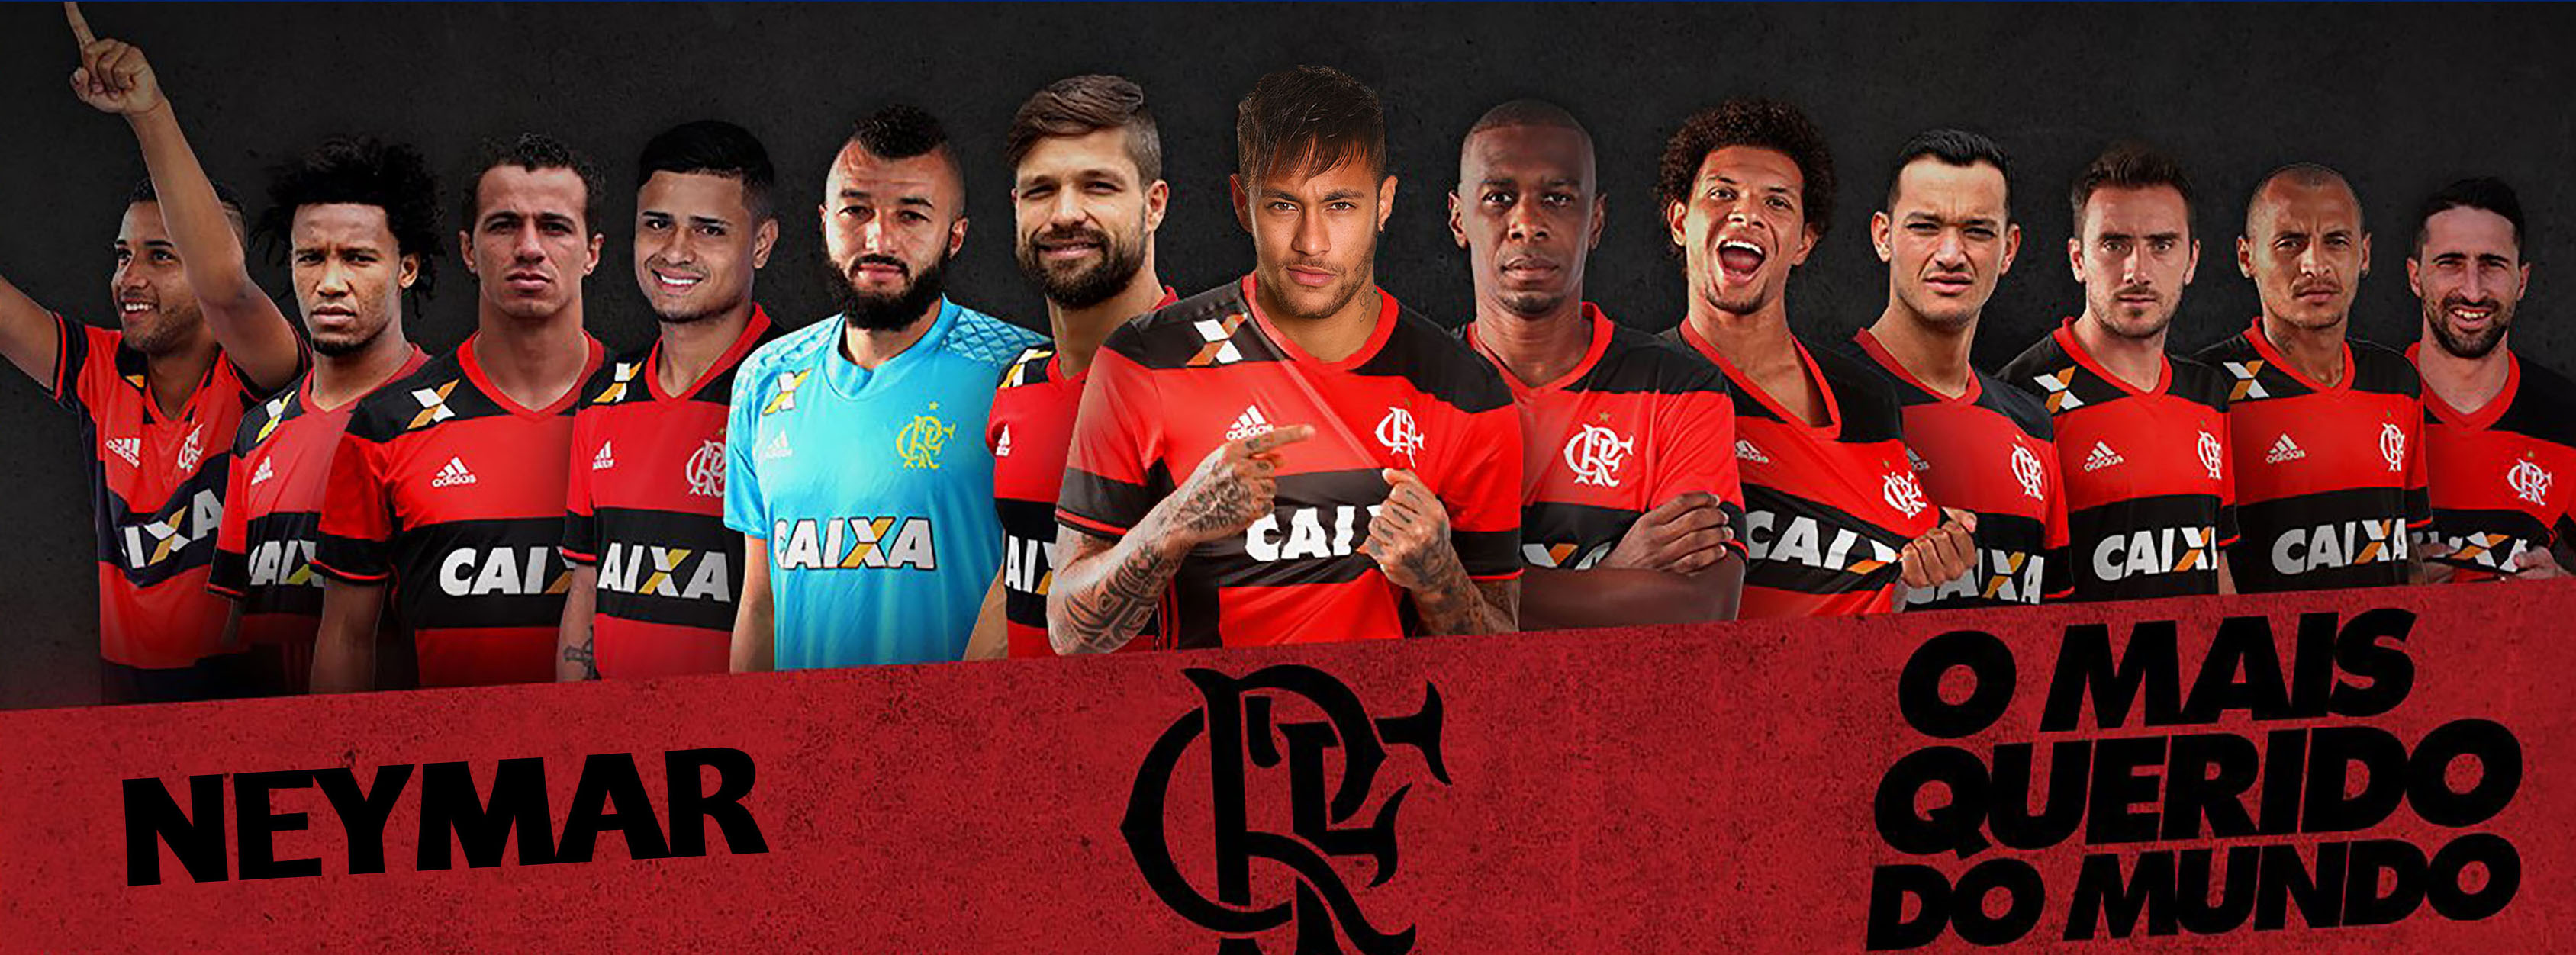 Montagens de Neymar no Flamengo 